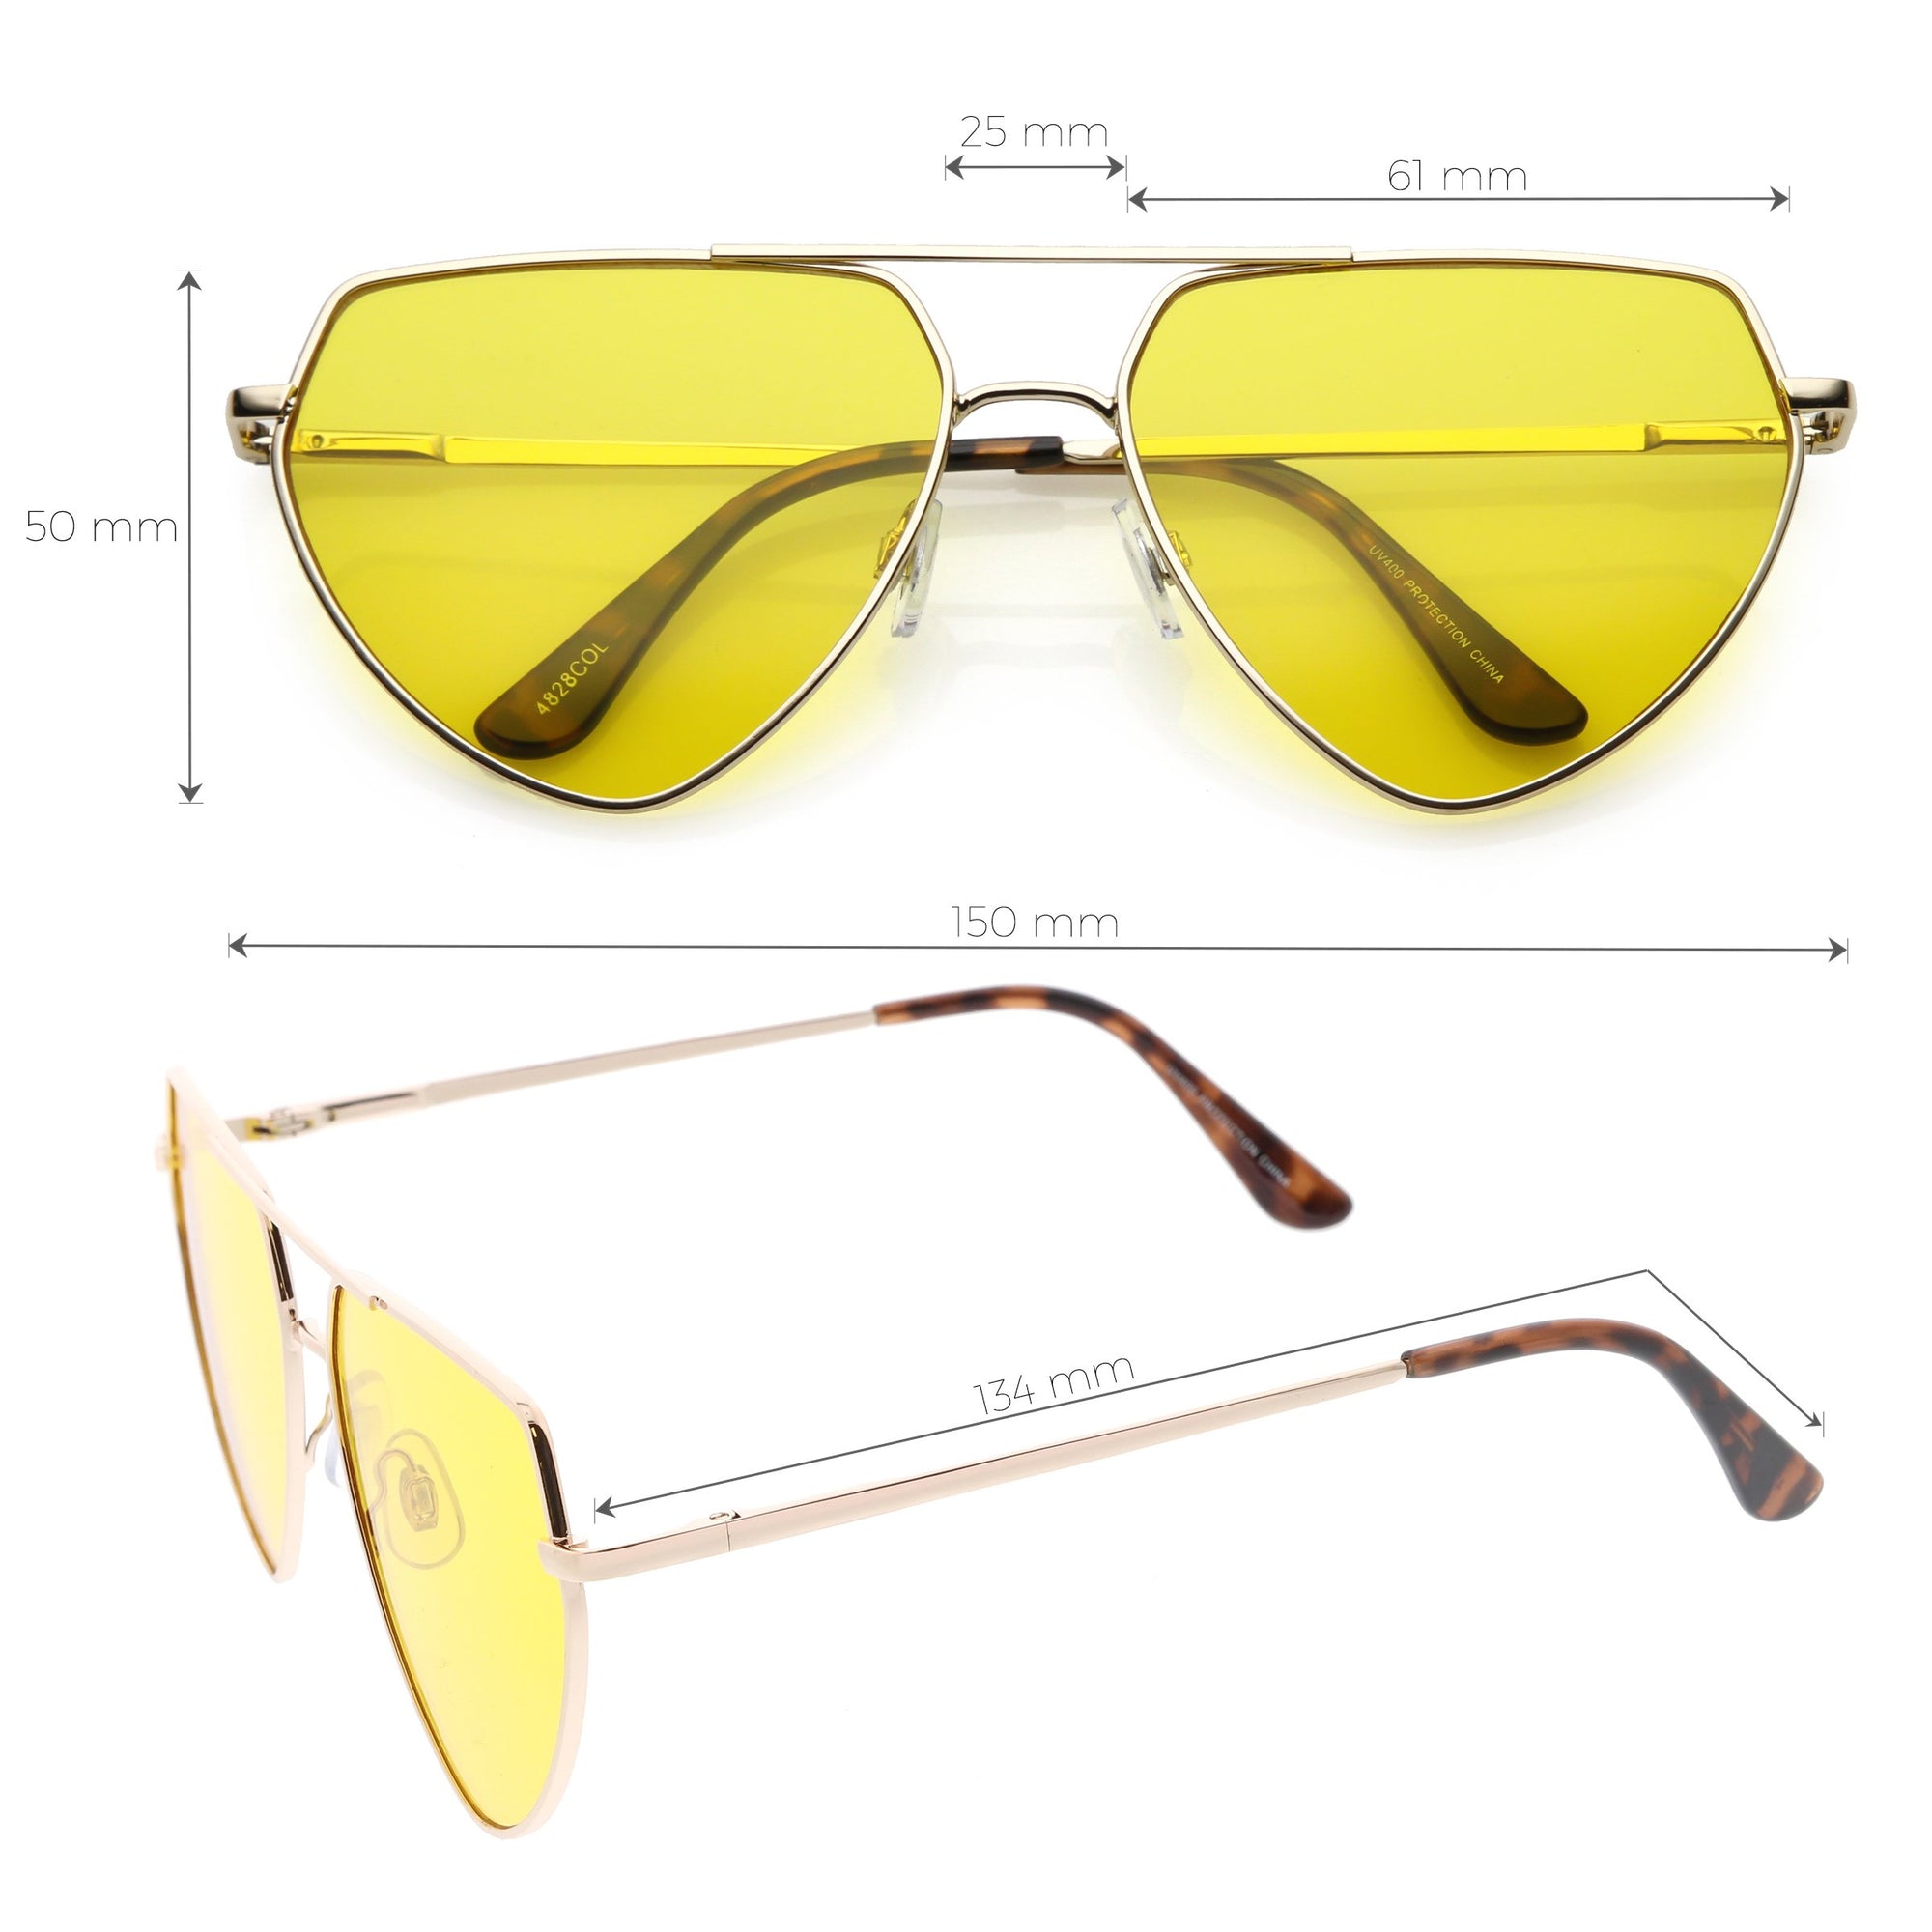 Premium Retro Colored Flat Lens Metal Aviator Sunglasses - zeroUV